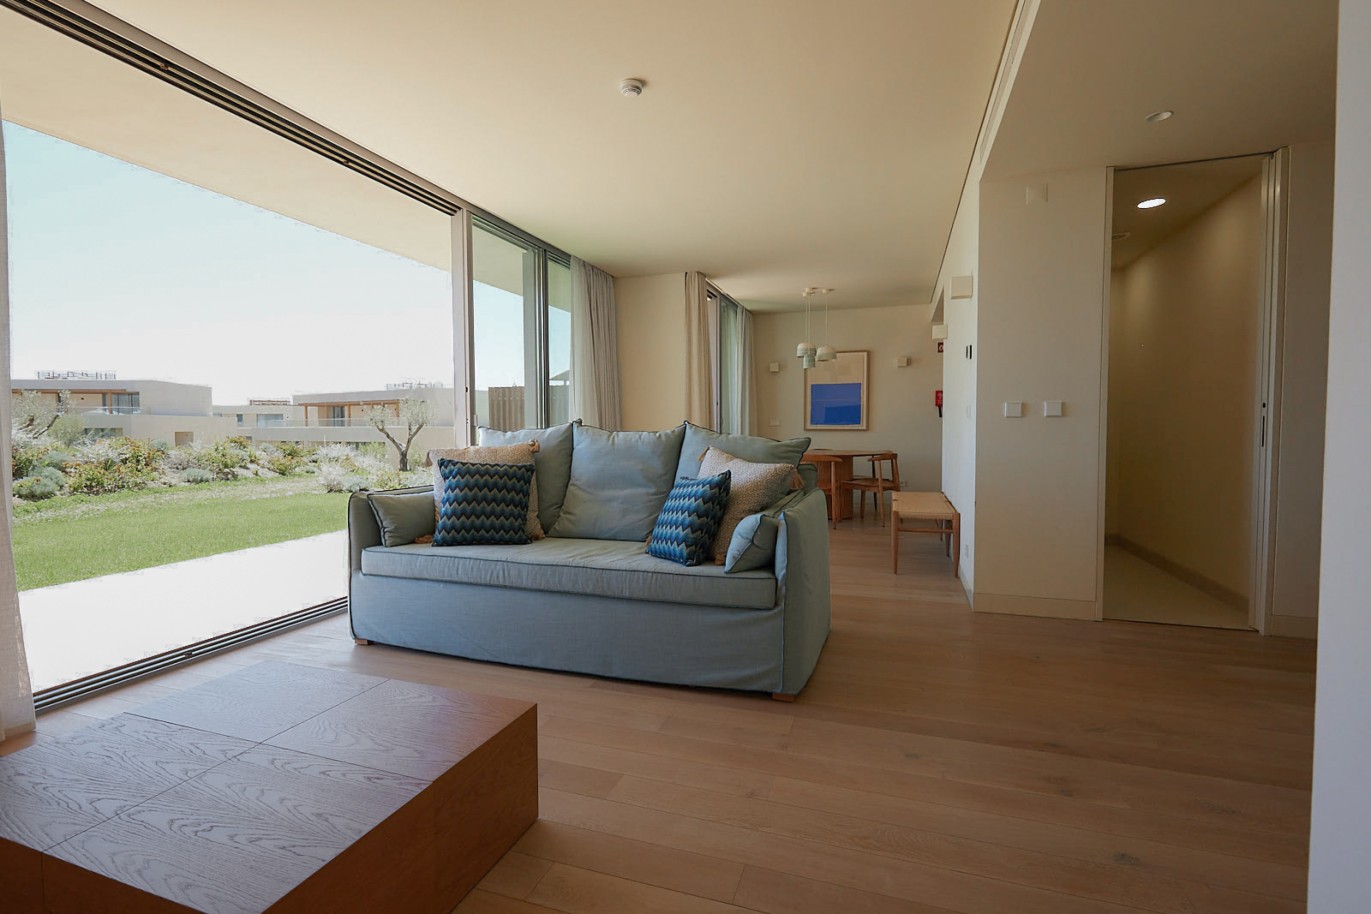 Piso de 3 dormitorios en complejo, en venta en Porches, Algarve_230732